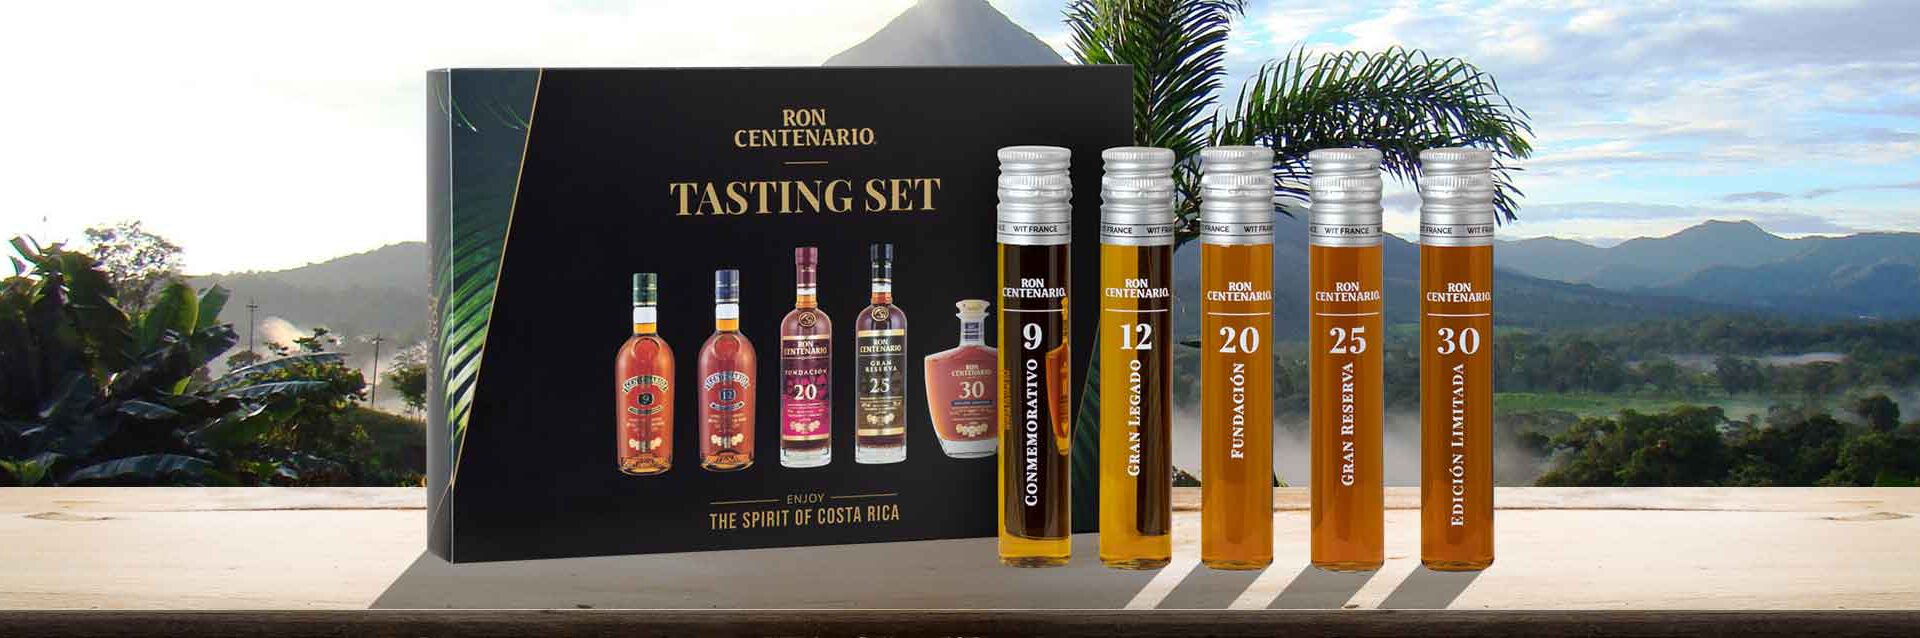 Centenario Tasting Set - Sierra Madre